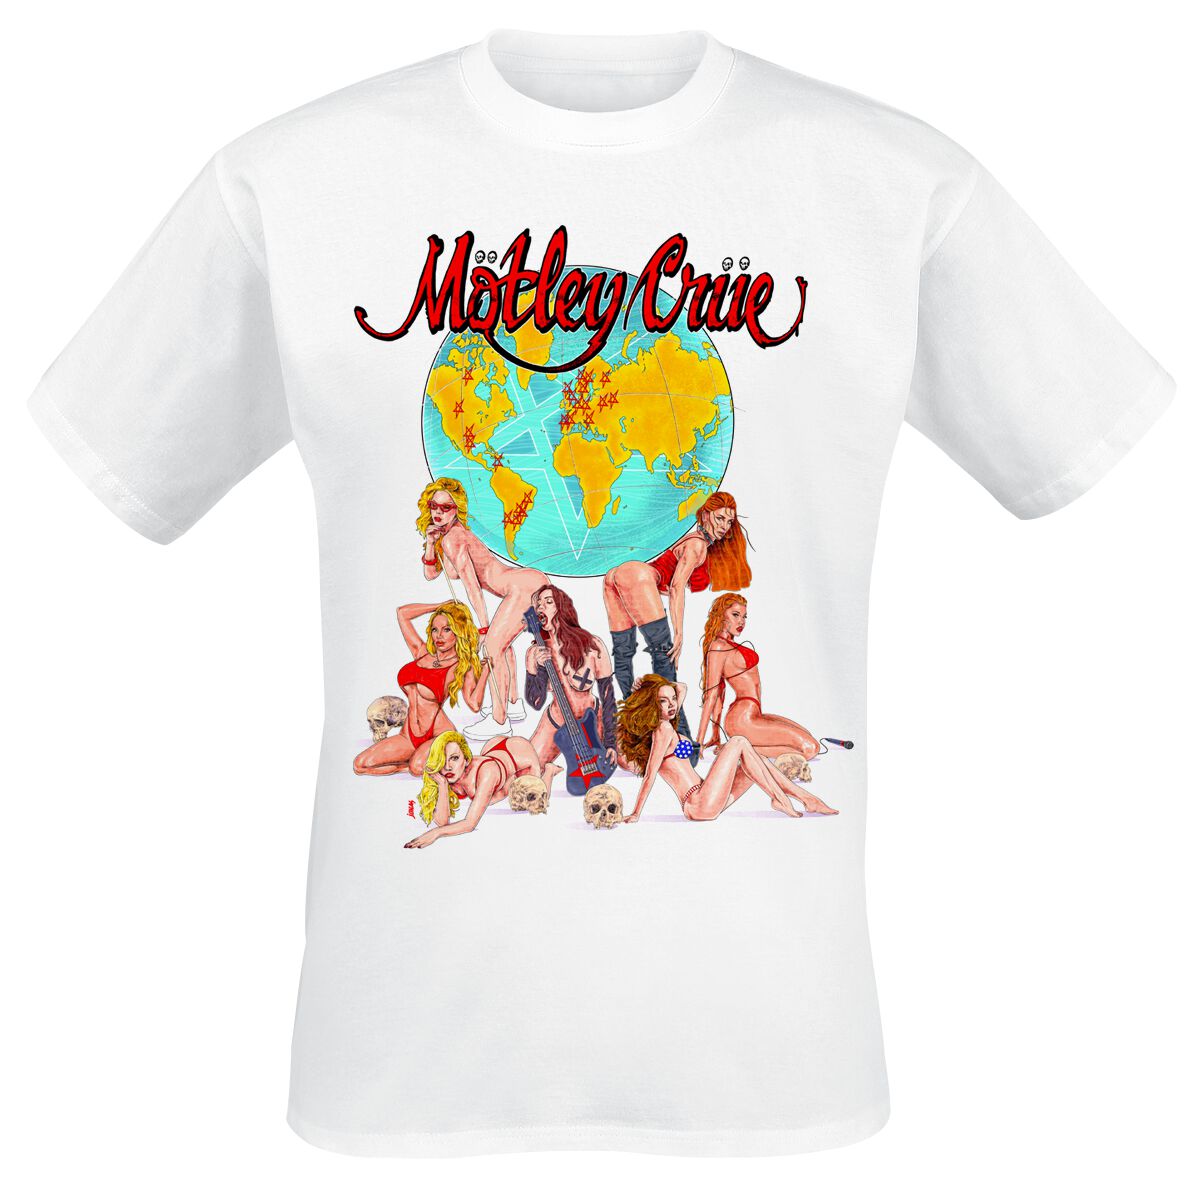 Mötley Crüe T-Shirt - Europe - S bis 4XL - für Männer - Größe XL - weiß  - Lizenziertes Merchandise!